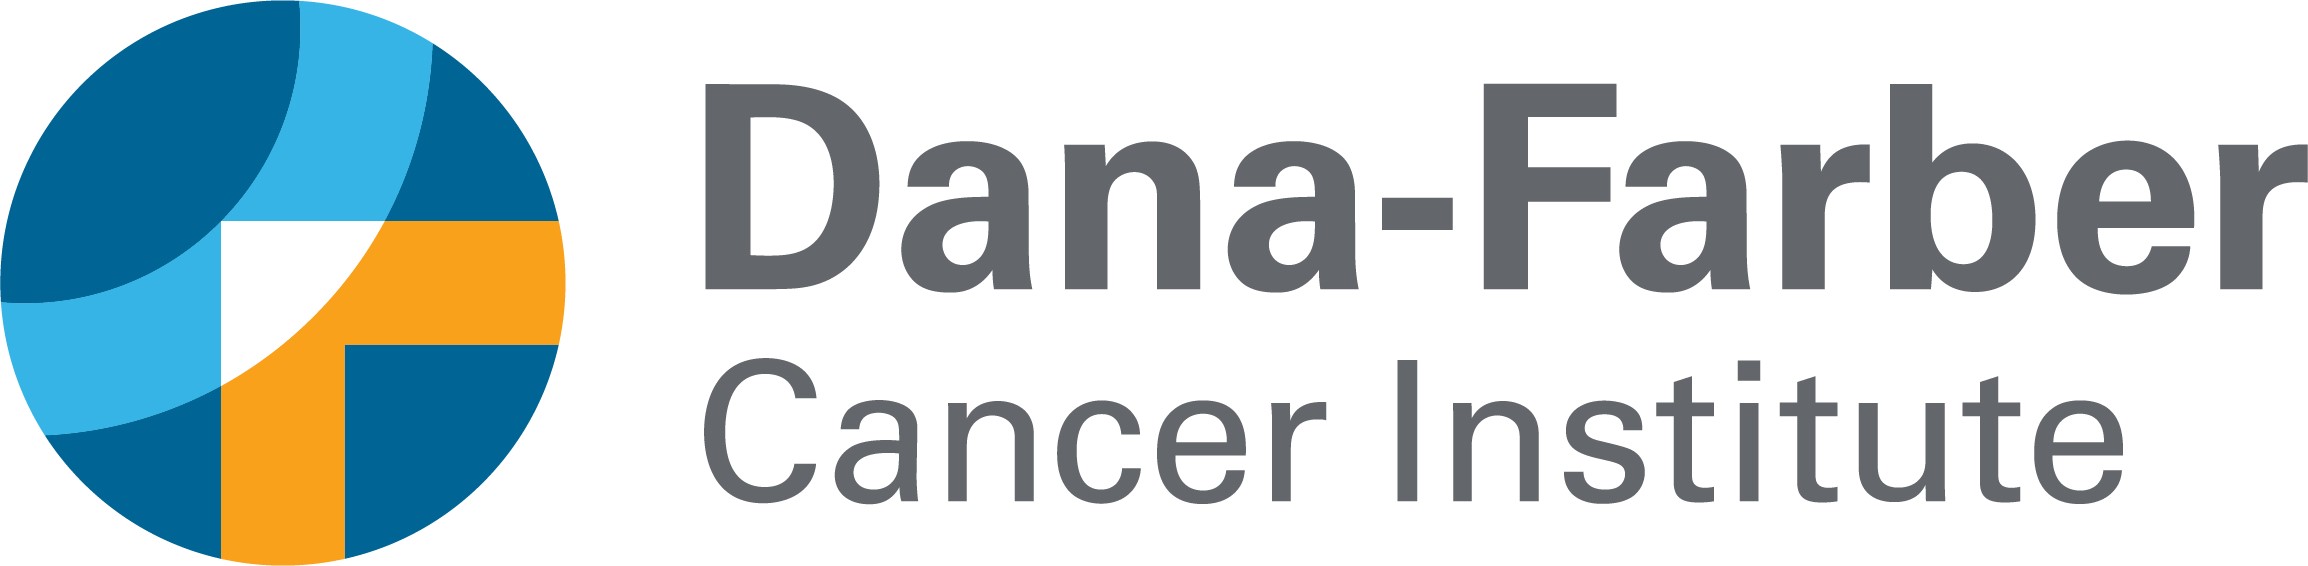 Dana-Farber Brigham Cancer Center